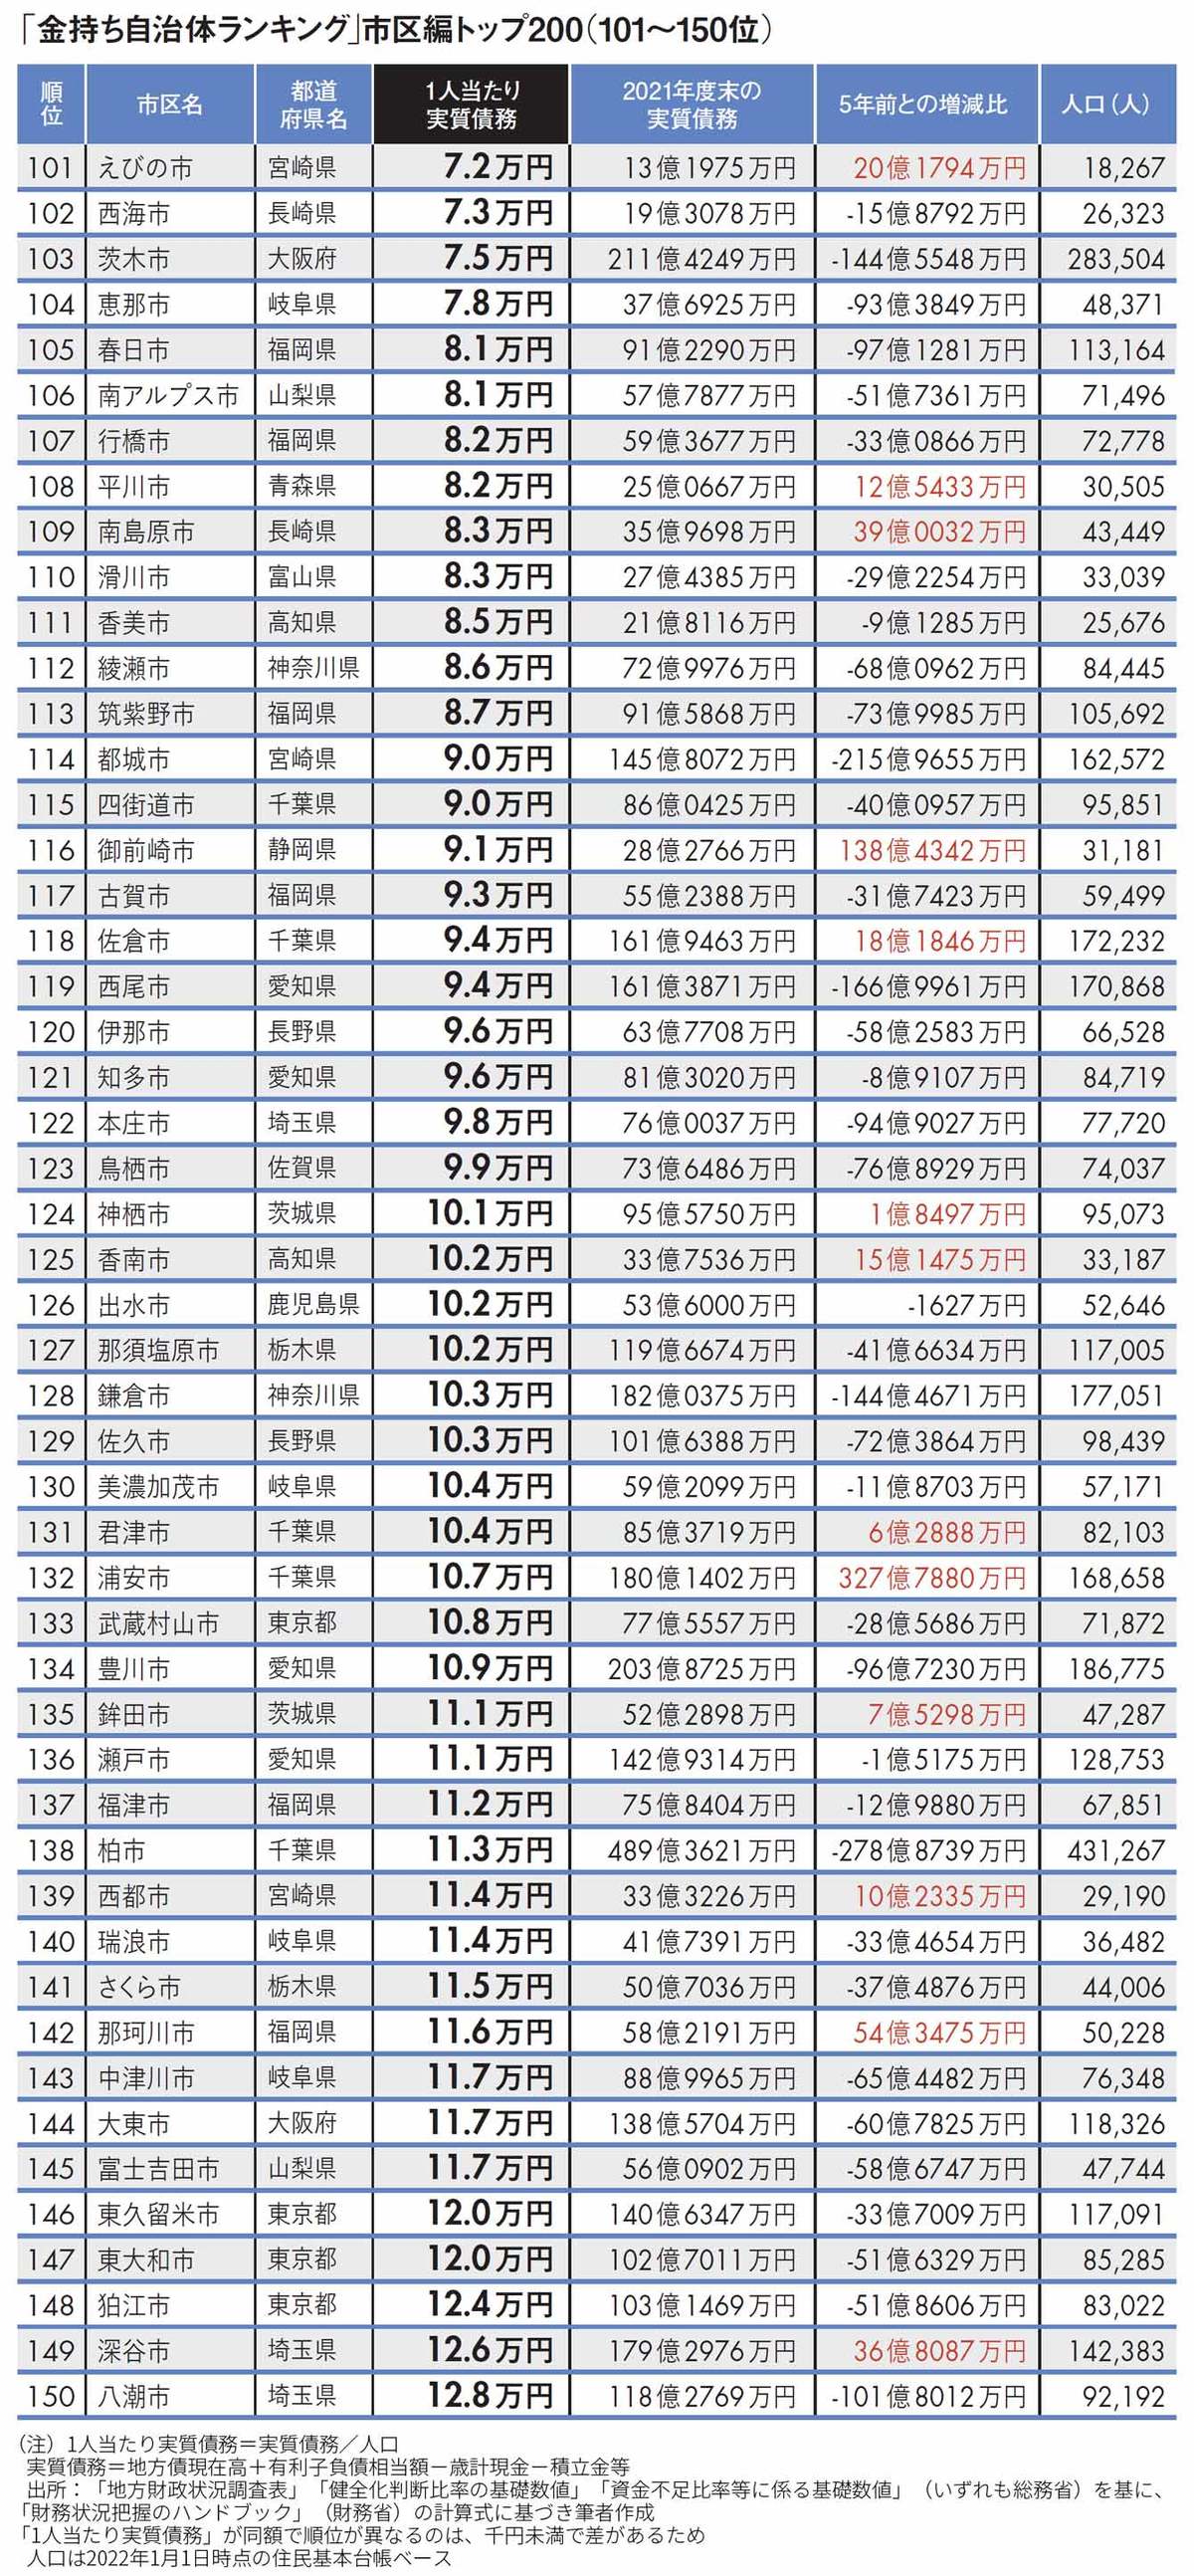 【図表】「金持ち自治体ランキング」市区編トップ200（101～150位）